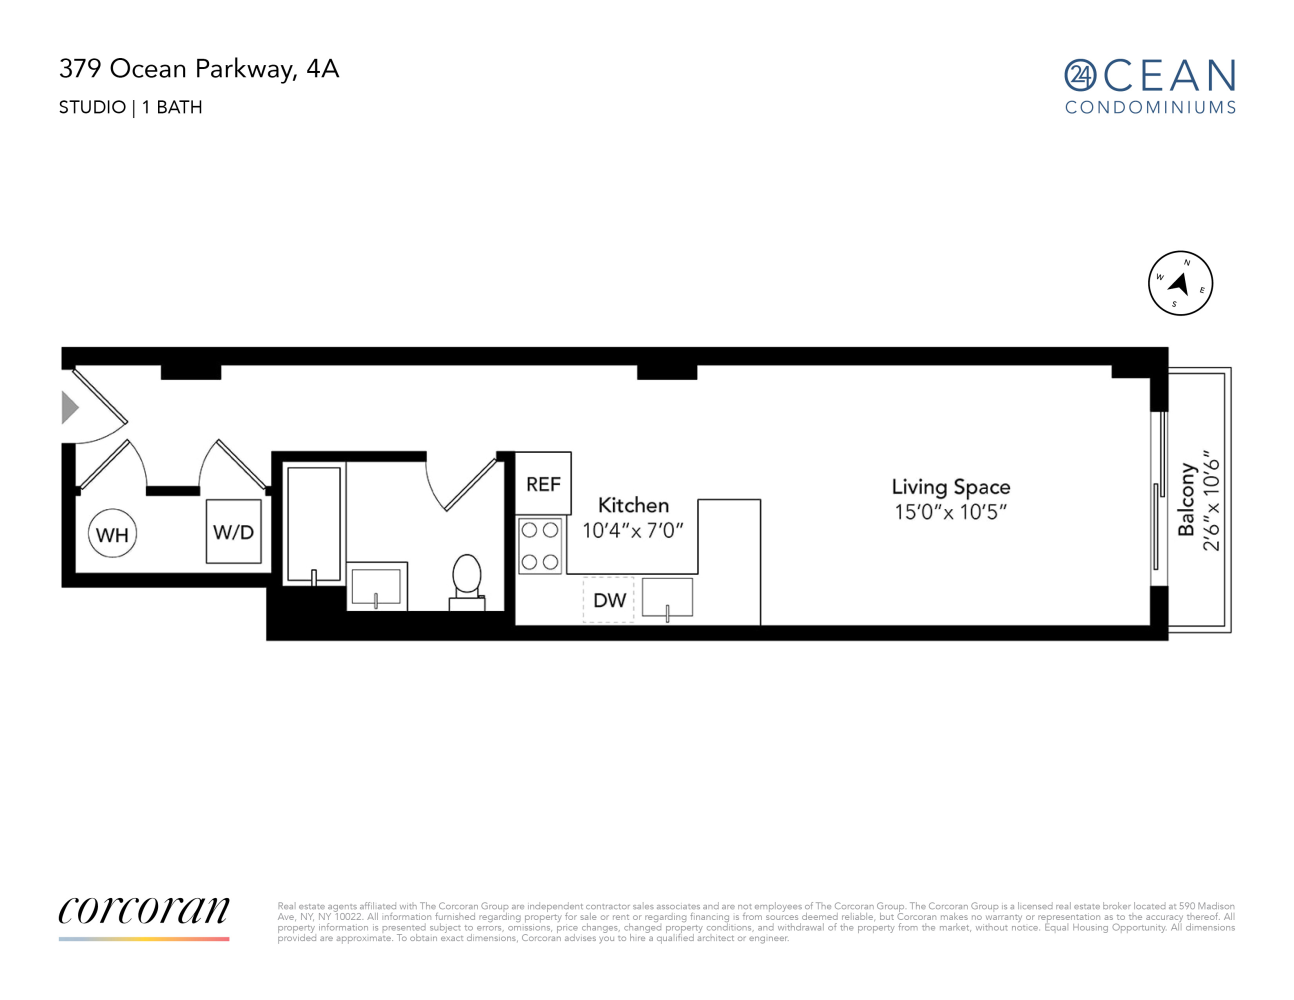 Floorplan for 379 Ocean Parkway, 4A